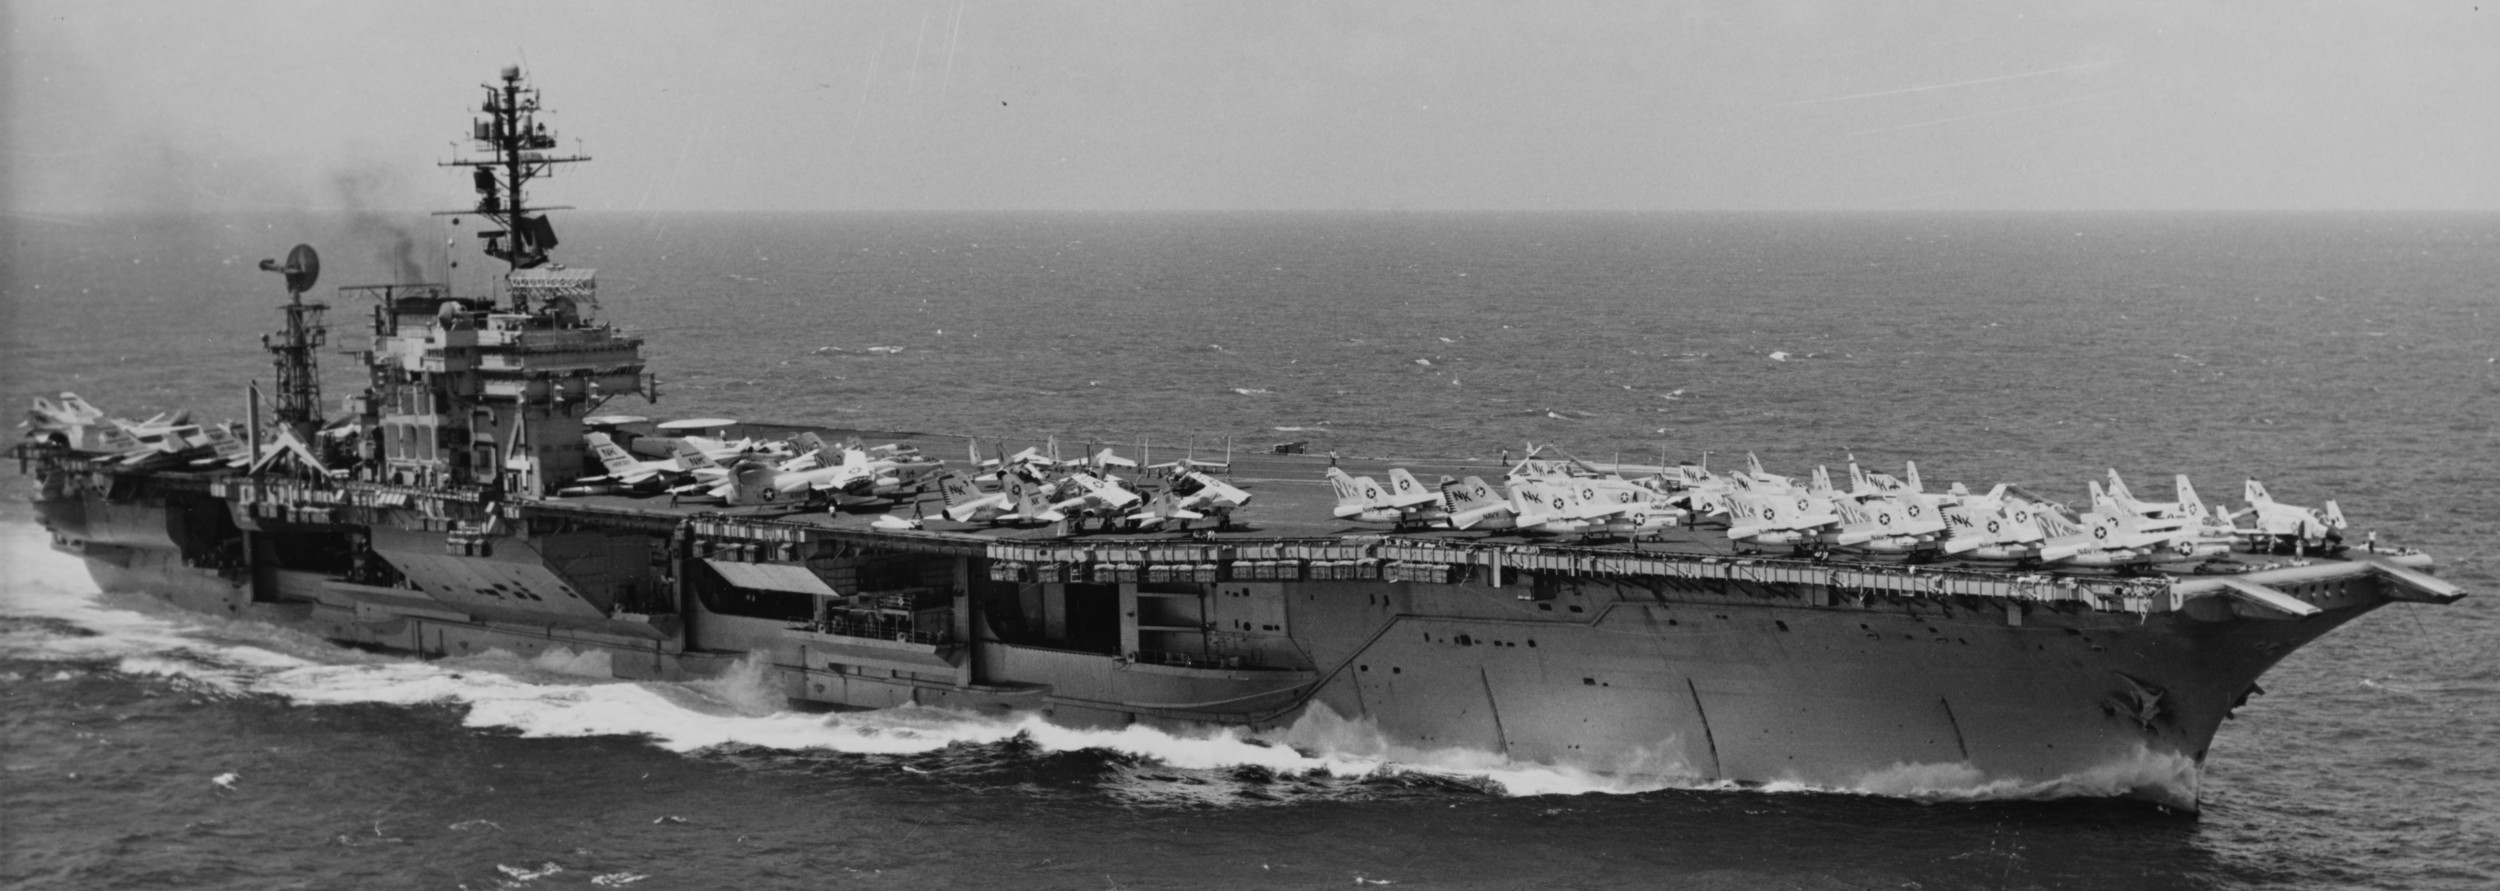 cv-64 uss constellation kitty hawk class aircraft carrier air wing cvw-14 us navy gulf tonkin 1968 38